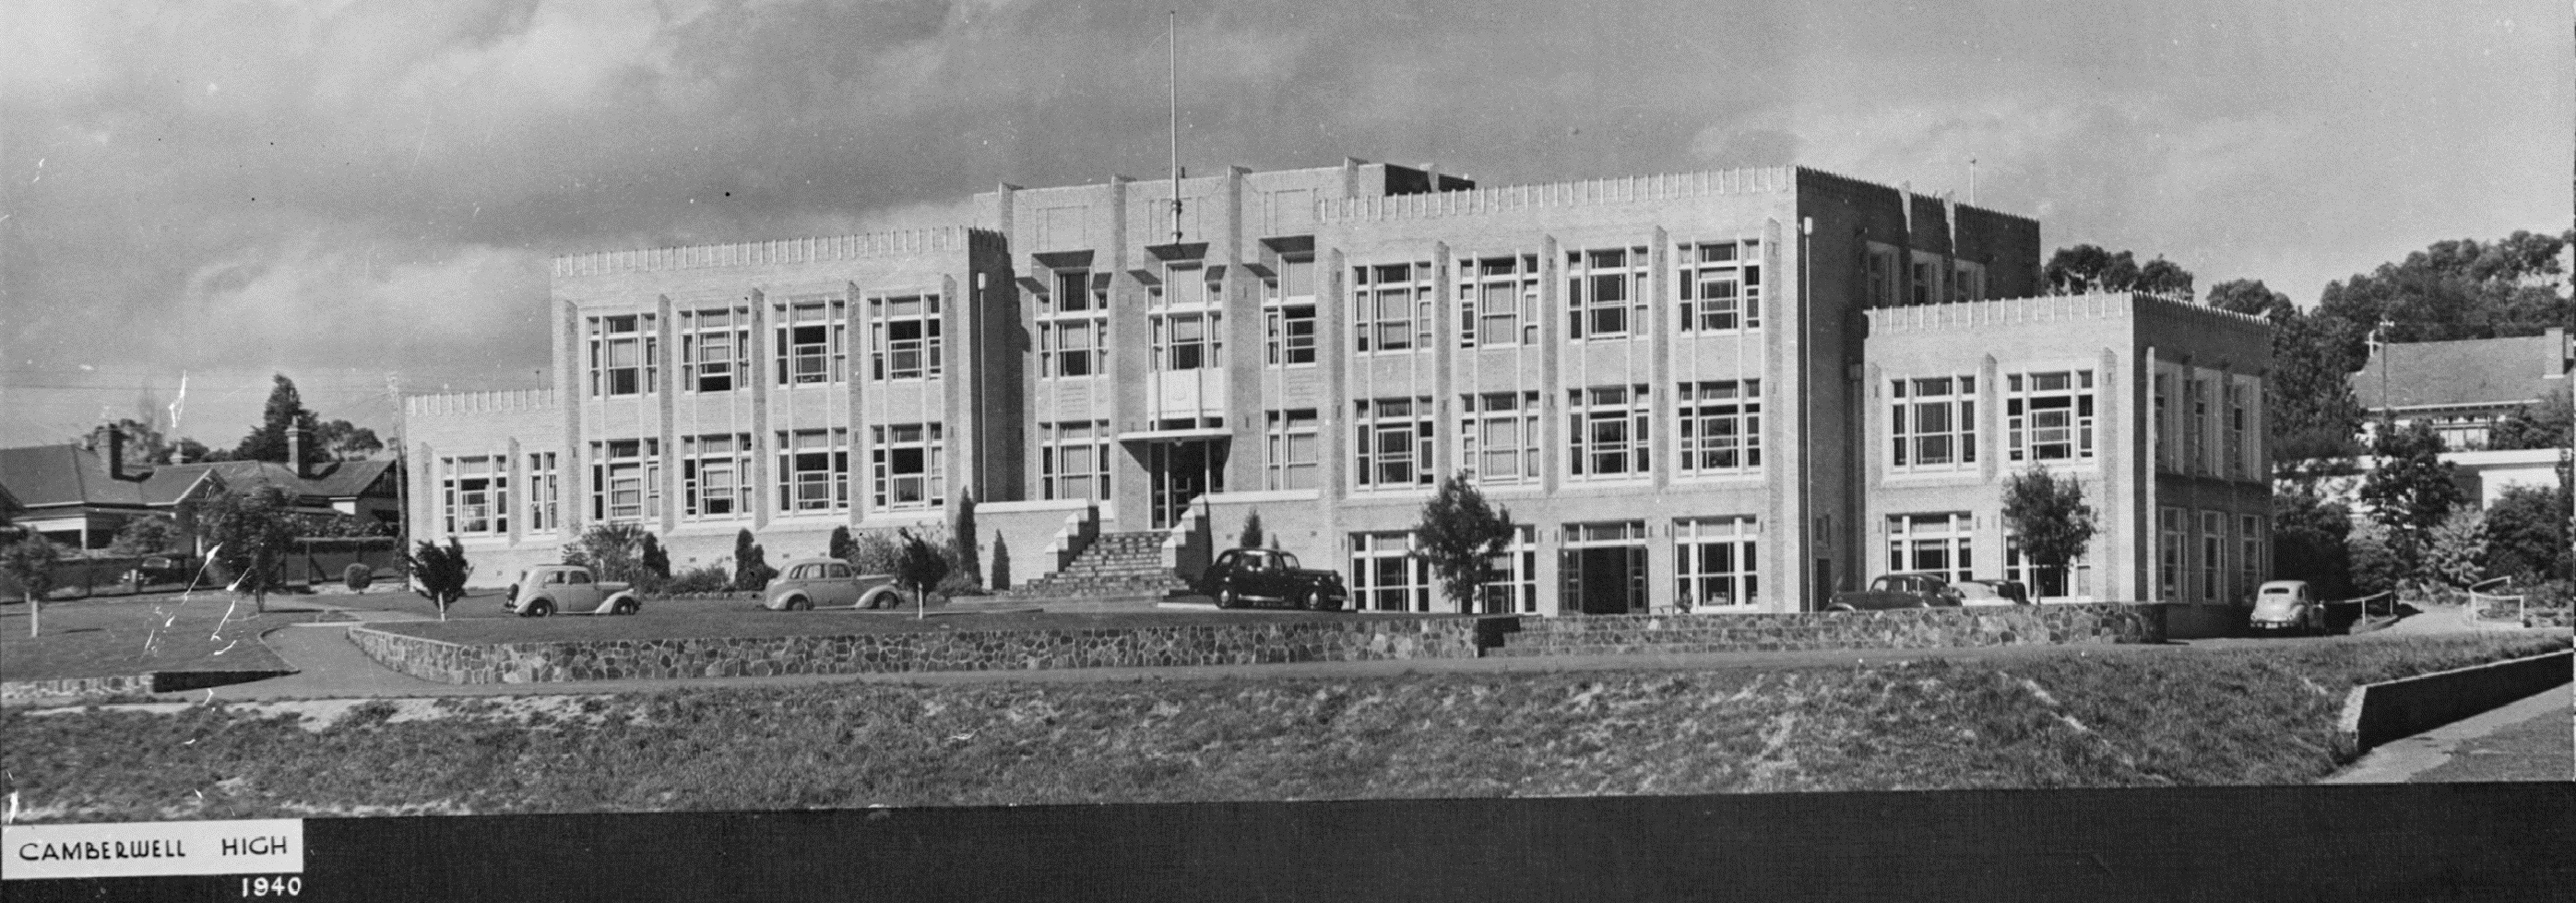 Camberwell High, built 1940